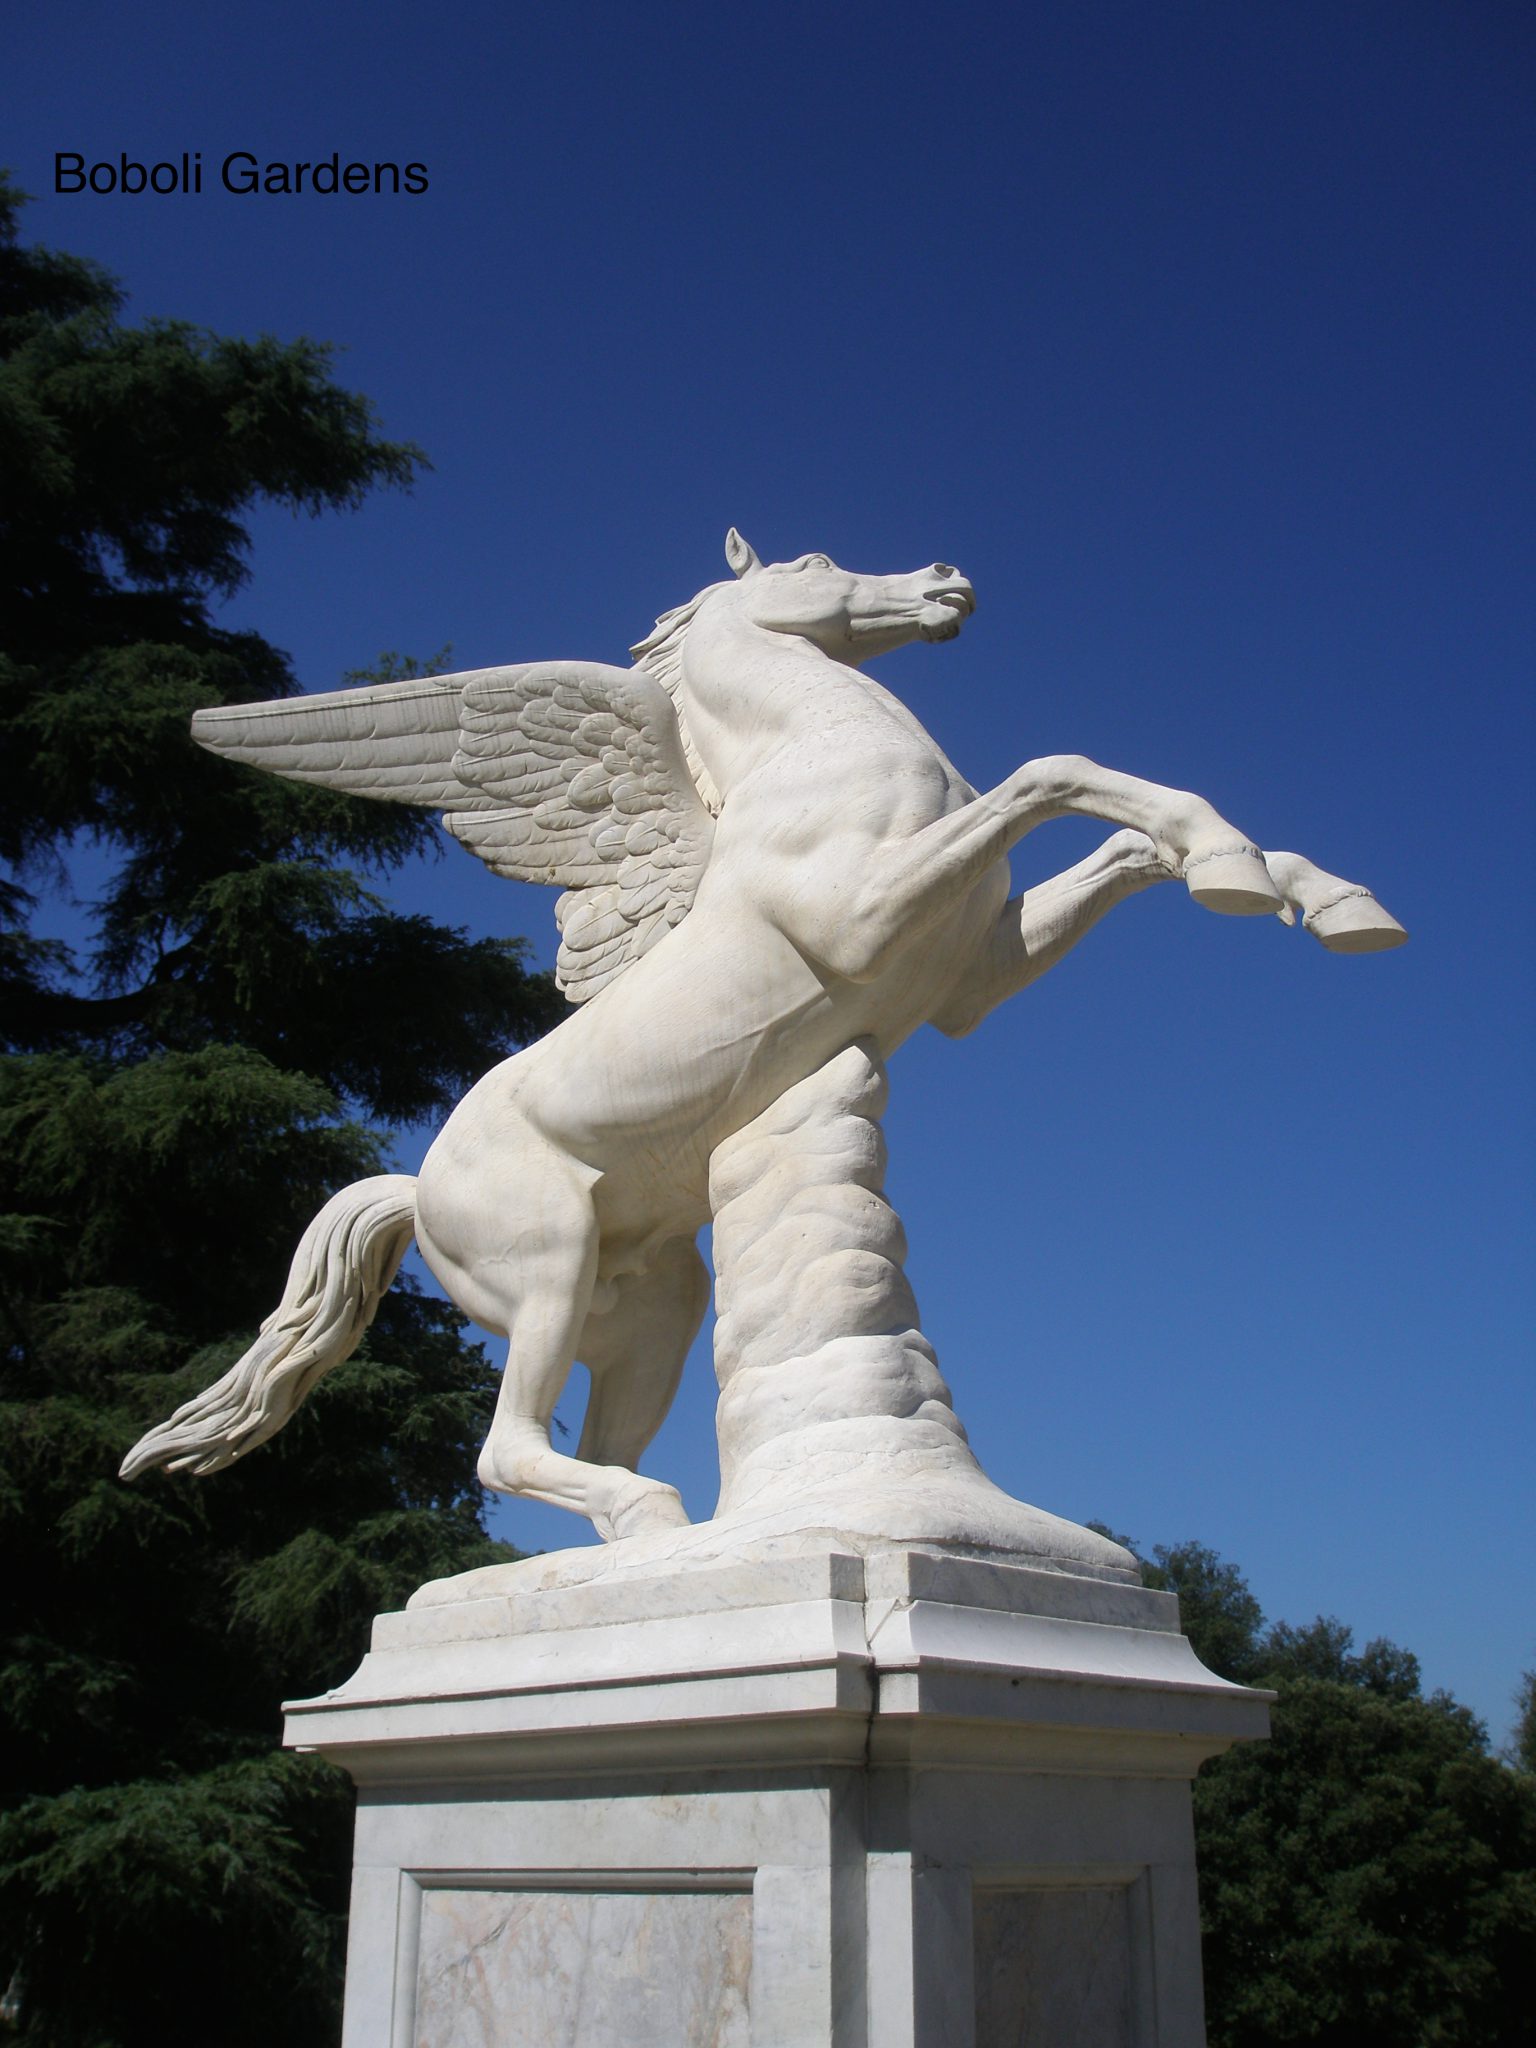 Pegasus, in the Boboli Gardens